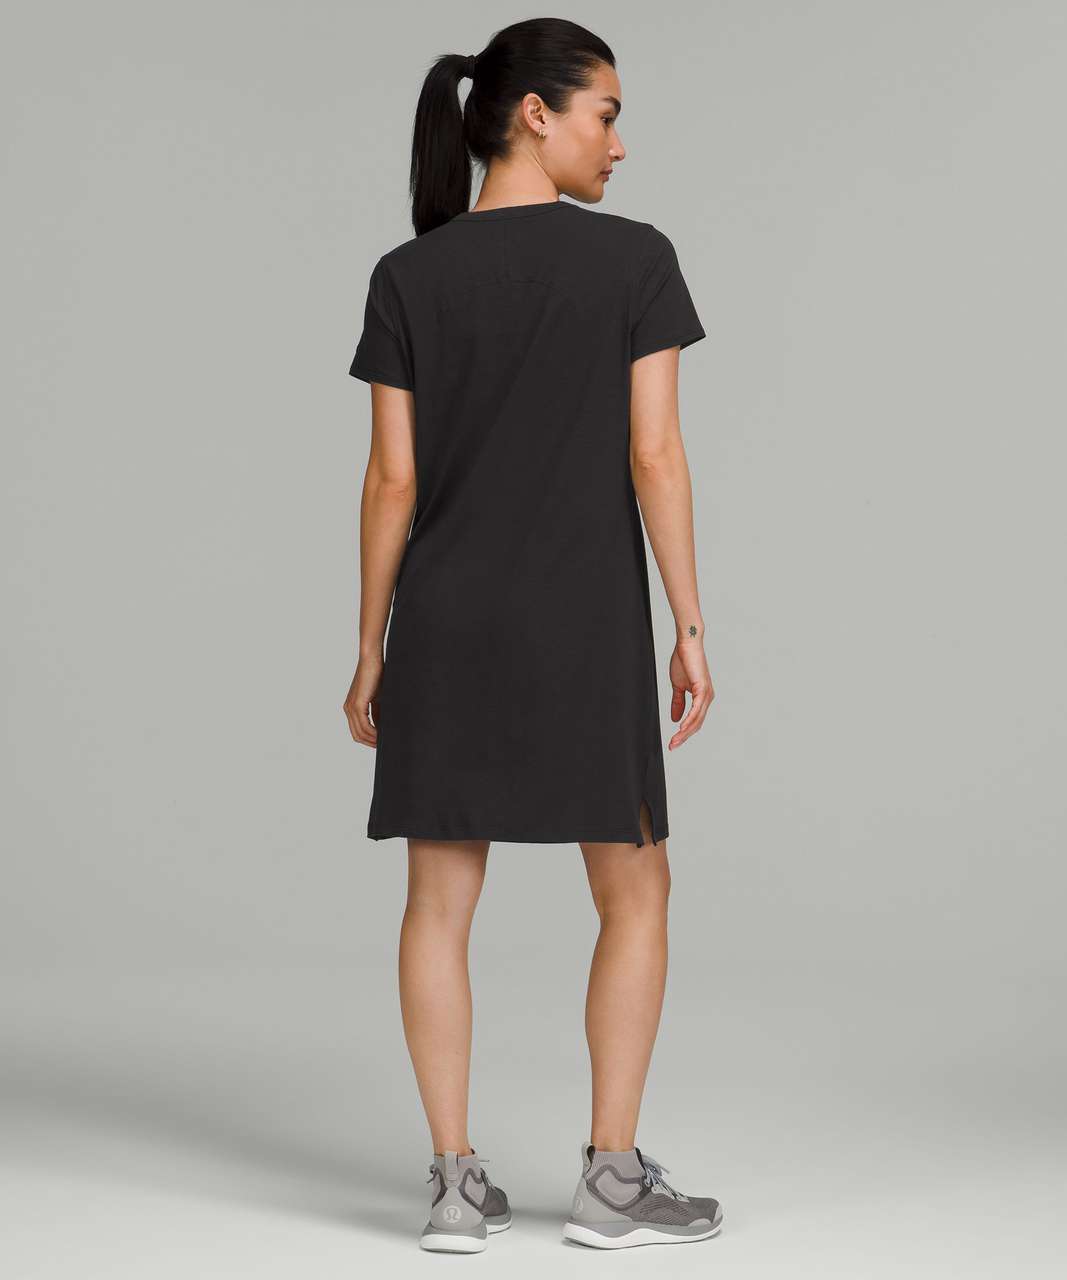 Lululemon Classic-Fit Cotton-Blend T-Shirt Dress - Black